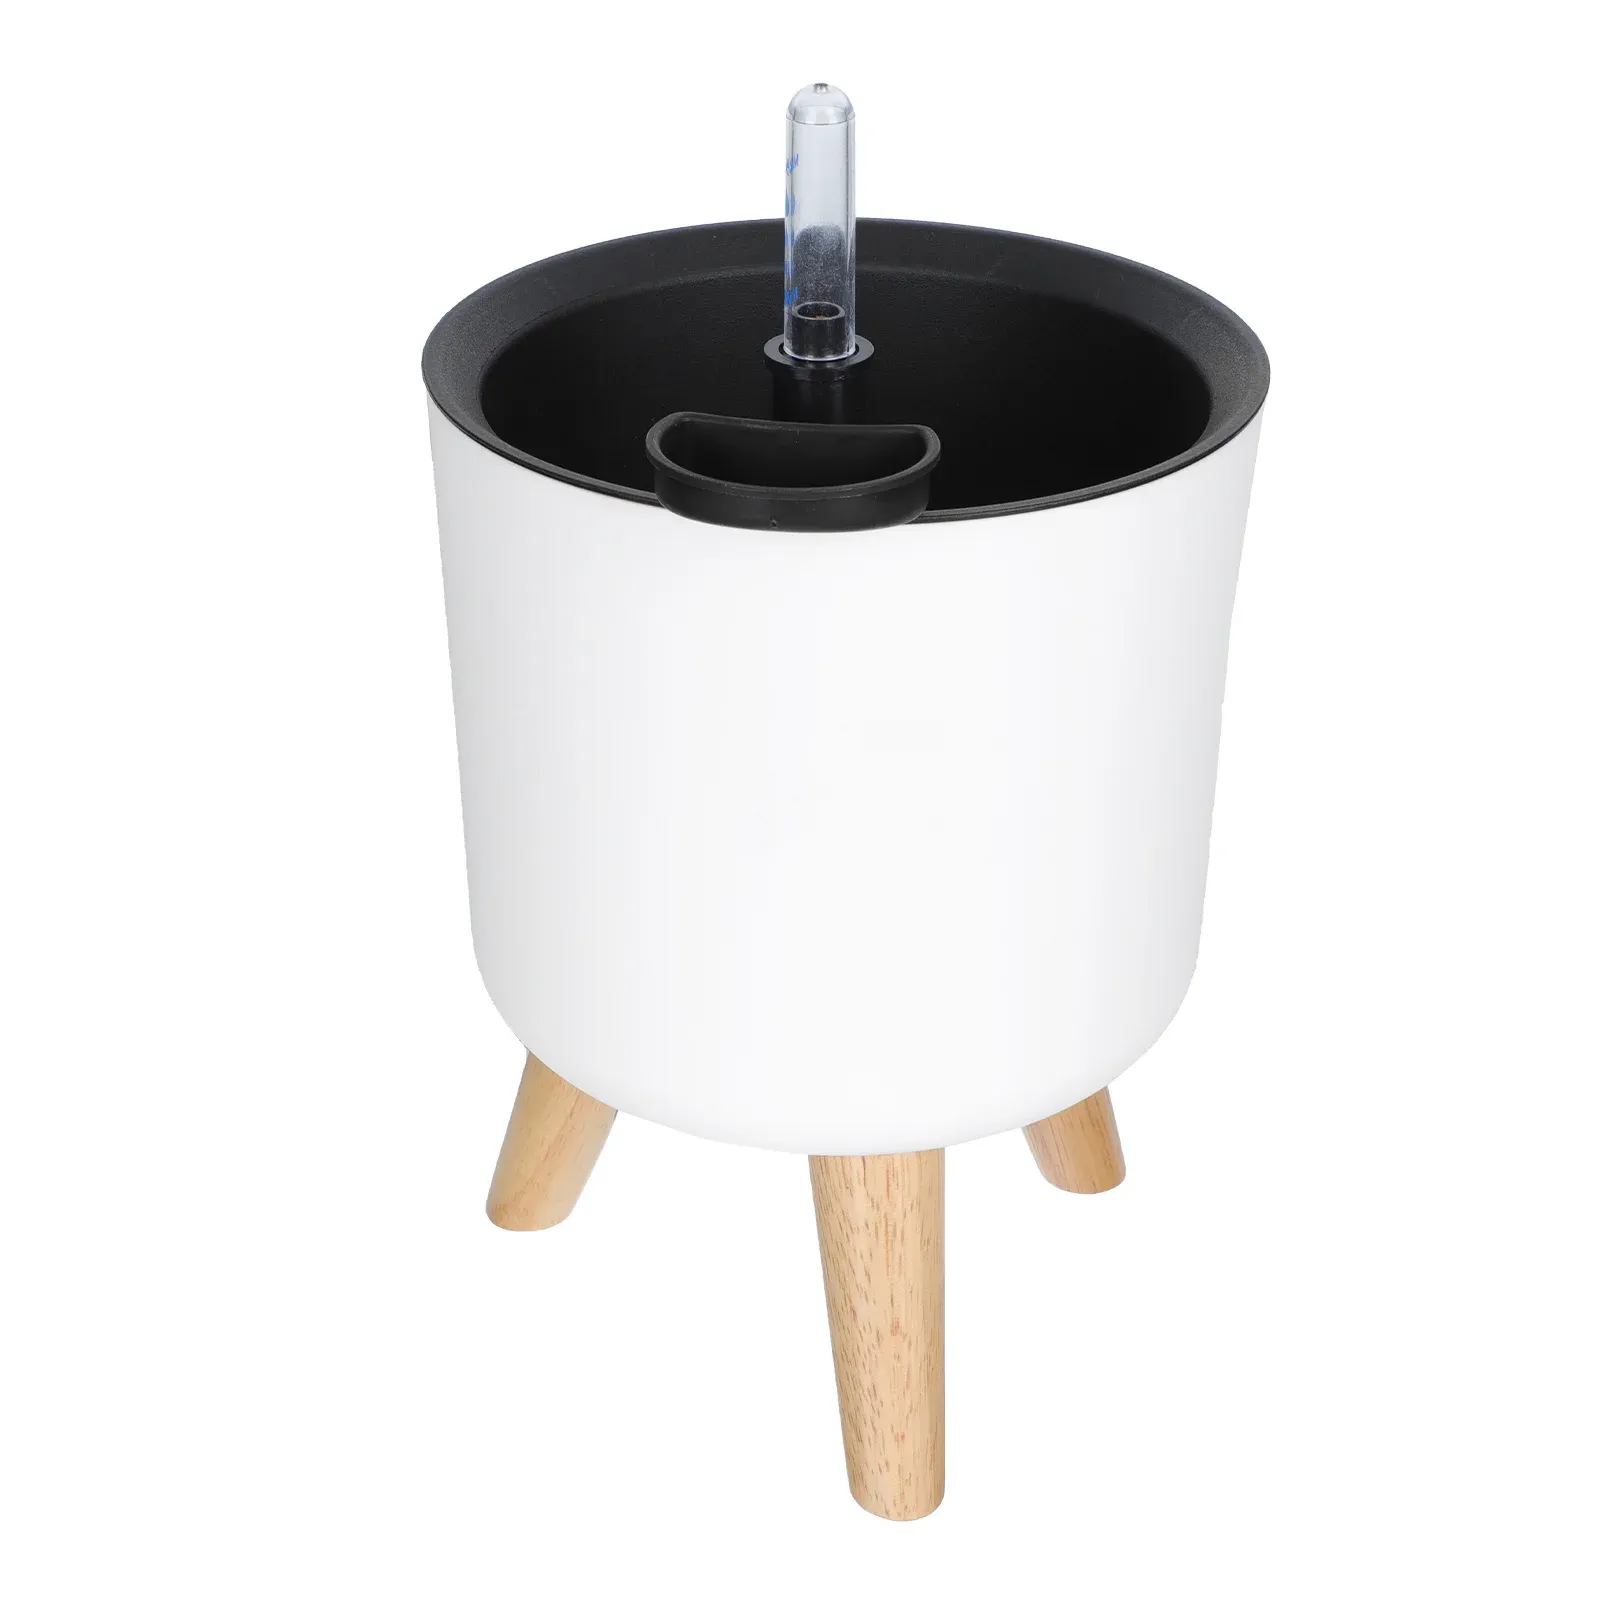 プランター自己散水プランター屋内屋内モダンな装飾的な植木鉢のための自動散水ポットプランター